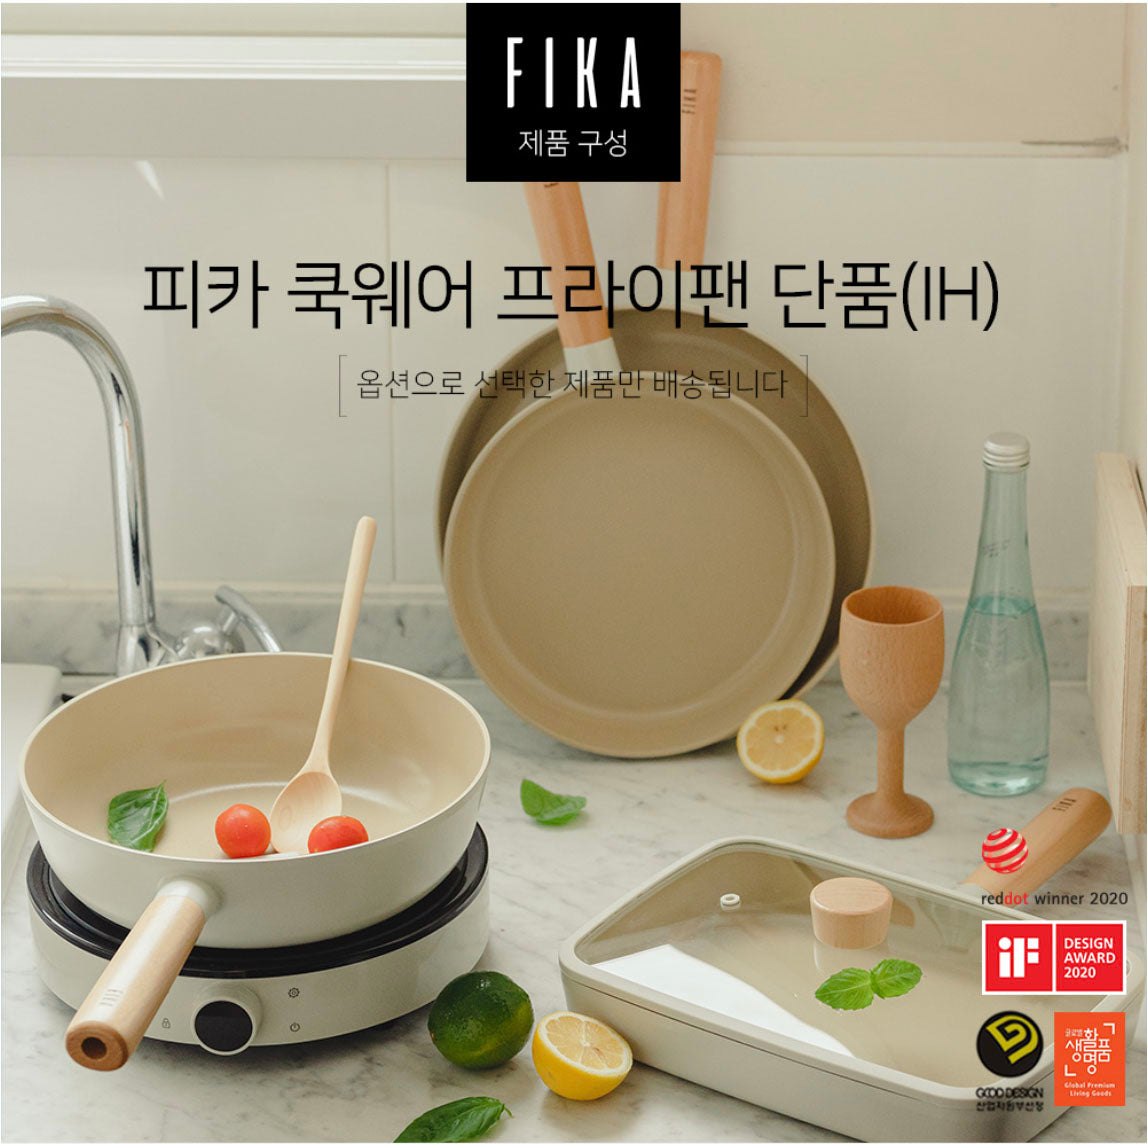  Fika IH Induction Pan Pot Grill Egg Pan Cookware Set